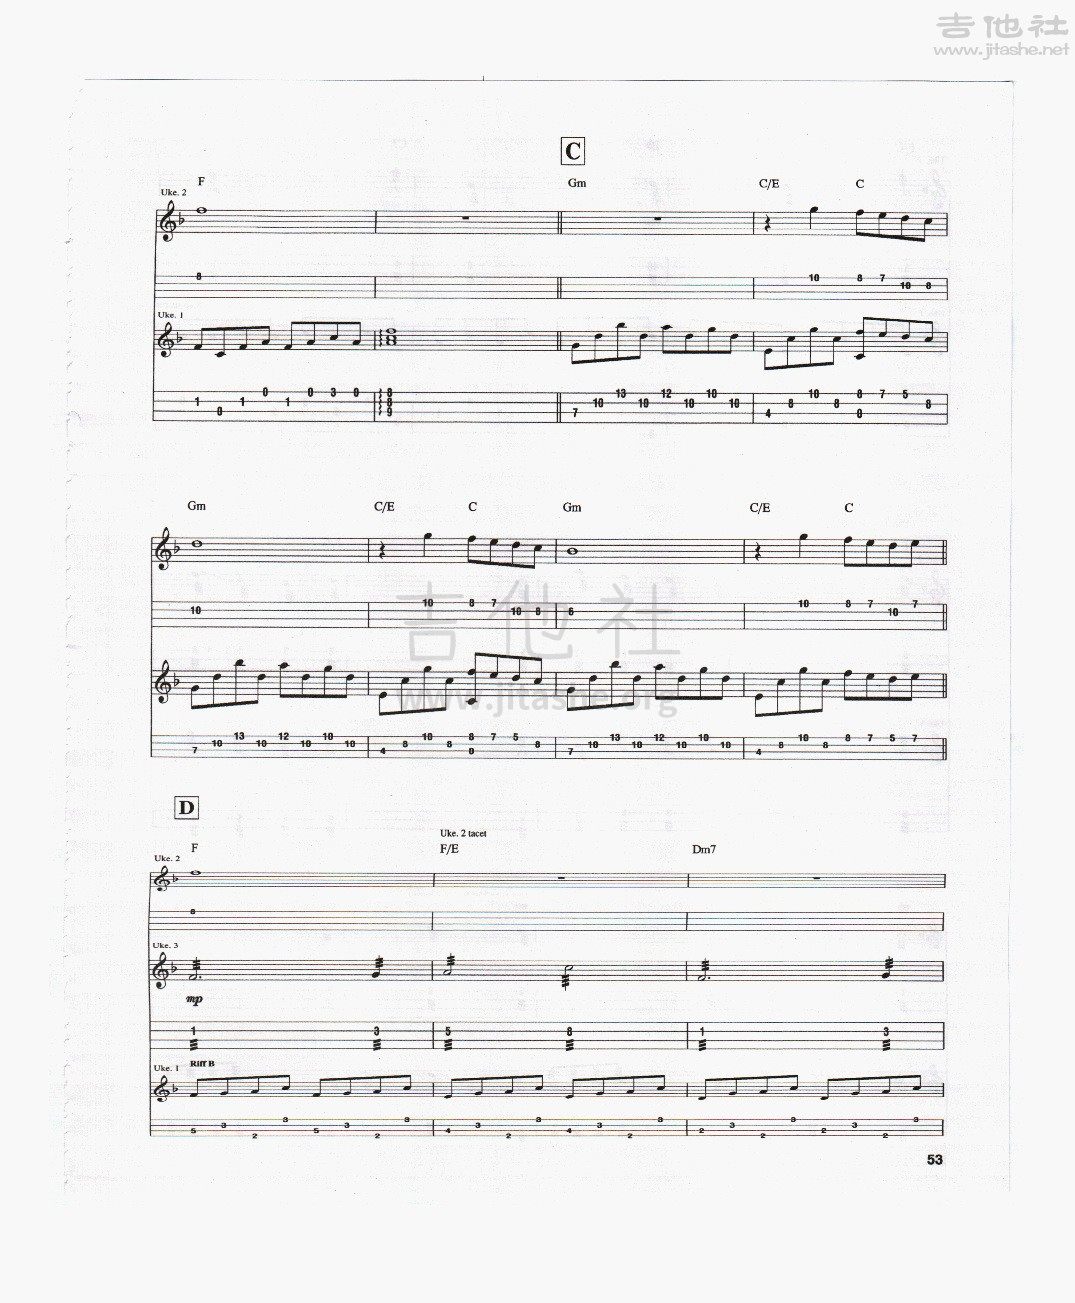 打印:Piano Forte吉他谱_Jake Shimabukuro(ジェイク・シマブクロ)_pianoforte2.jpg